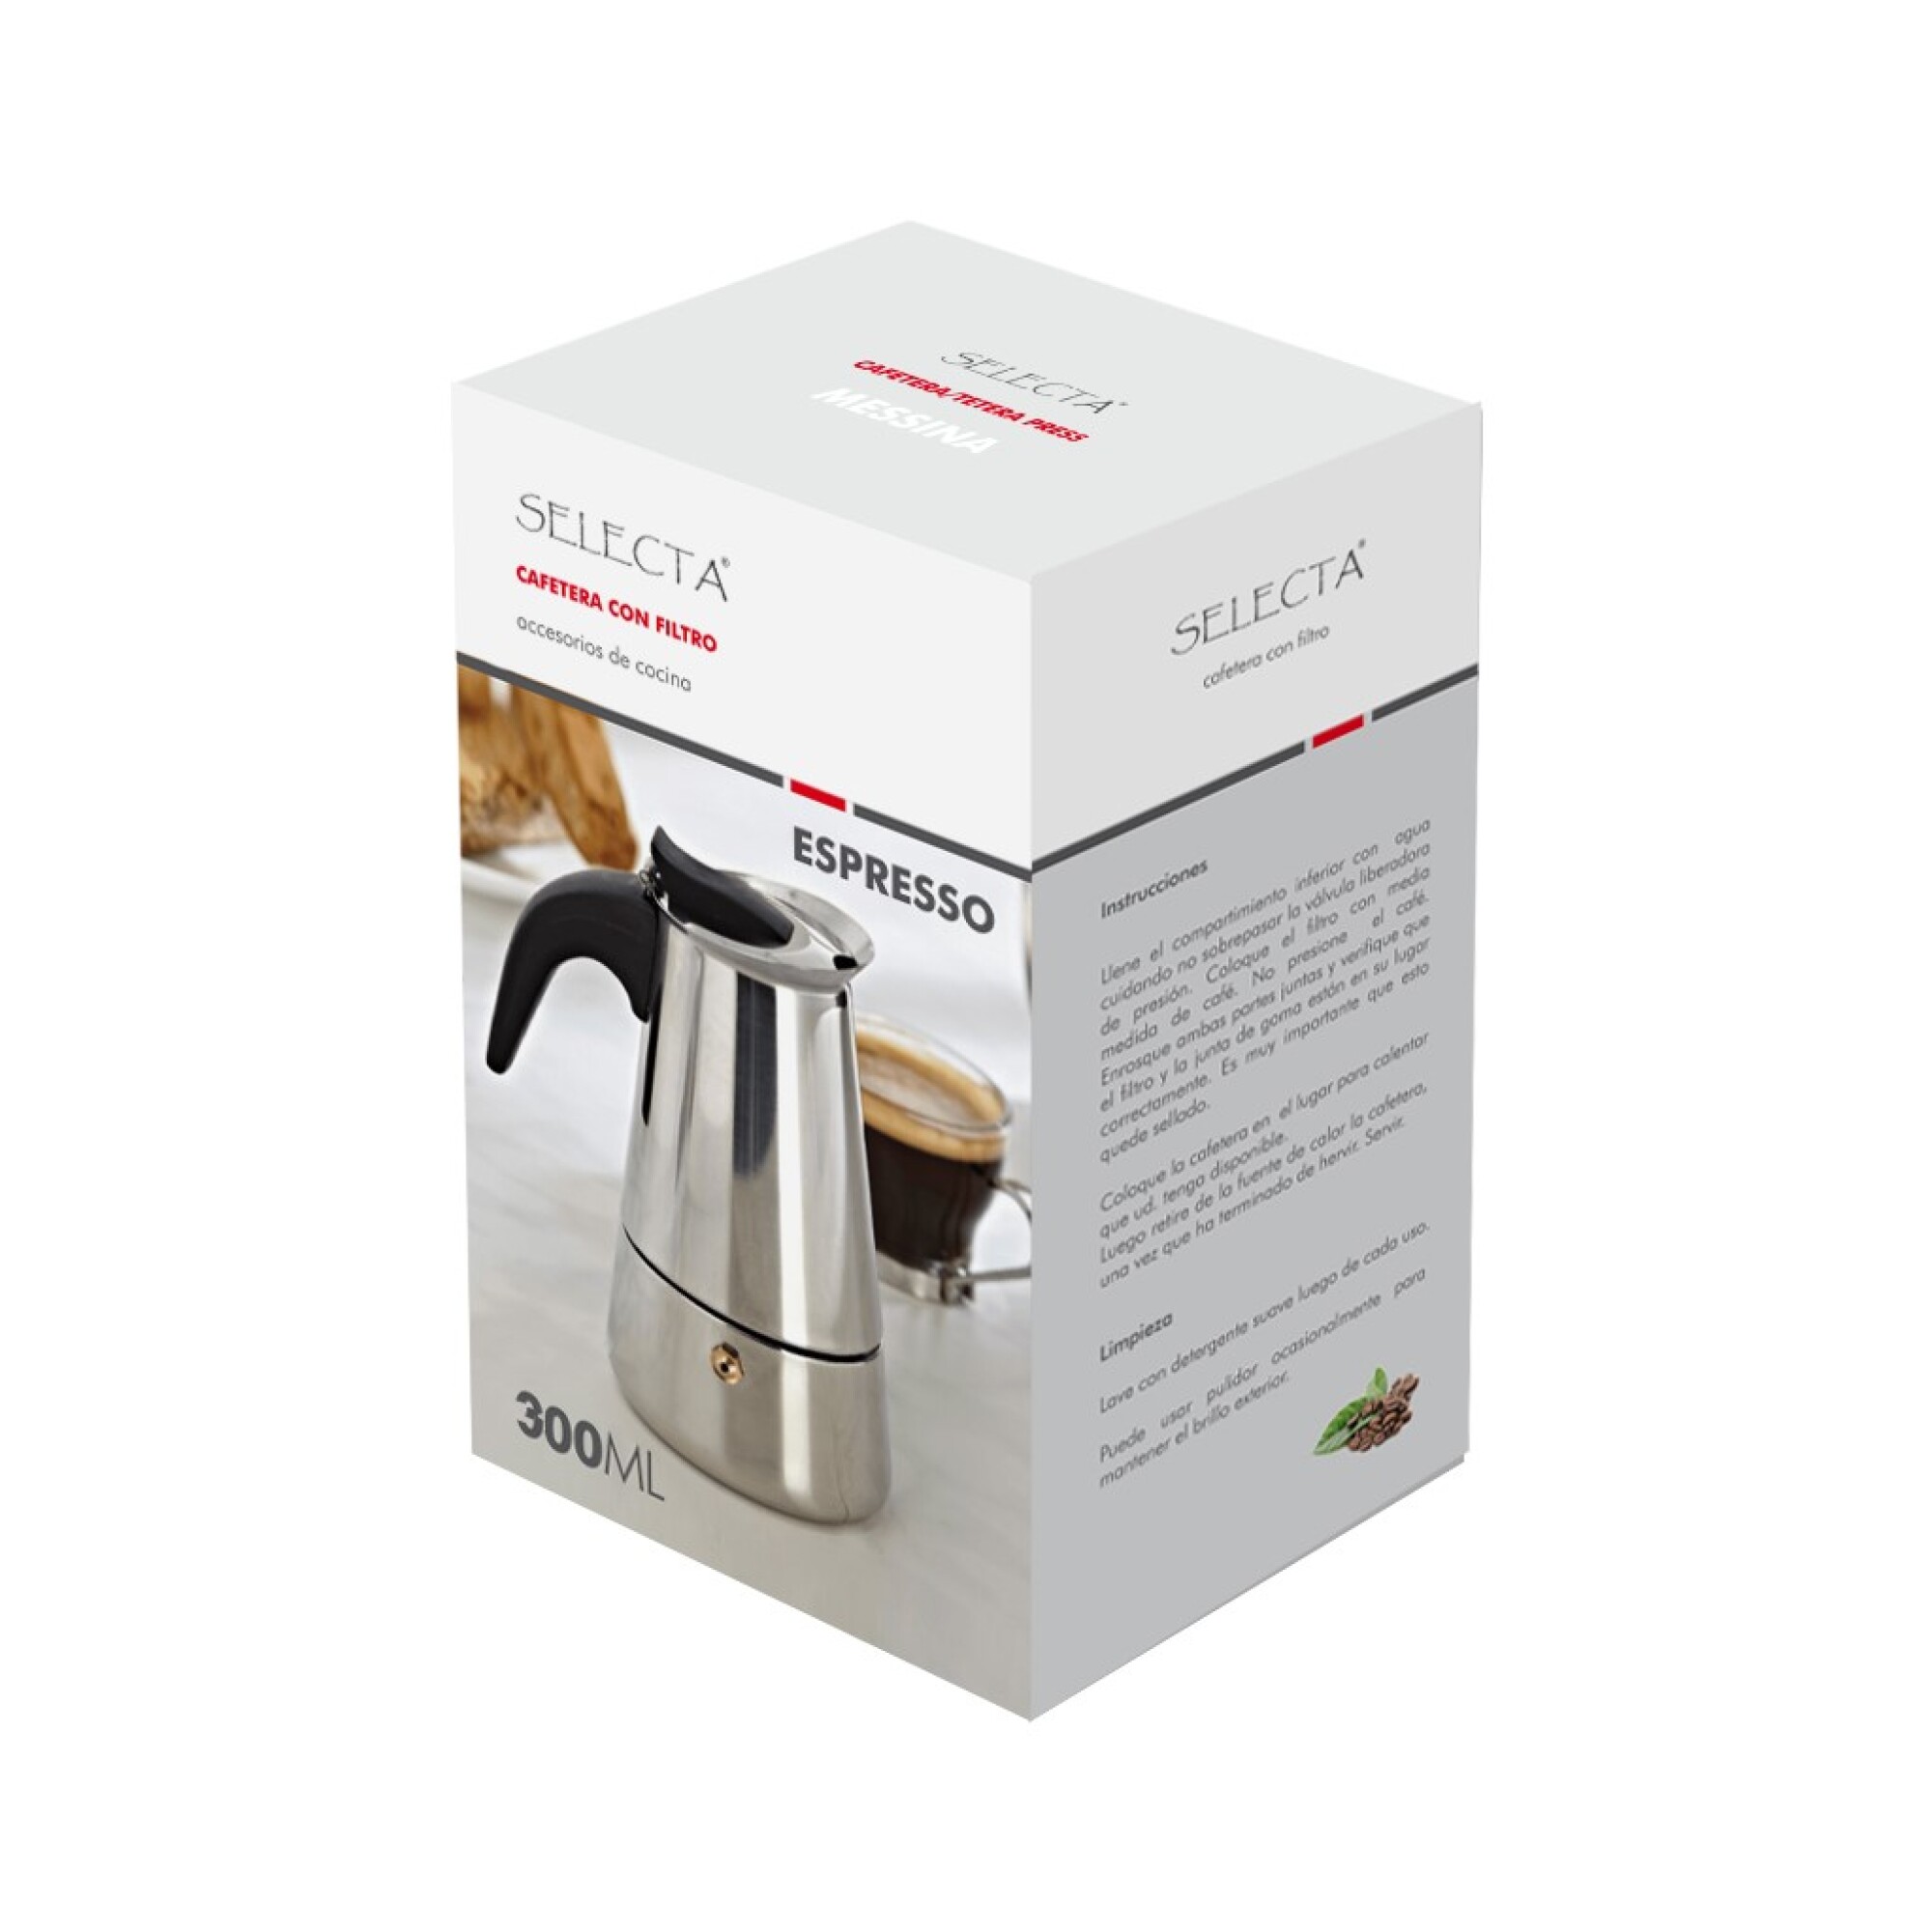 Cafetera italiana Moka Espresso de aluminio, cafetera con filtro, 300/600ml